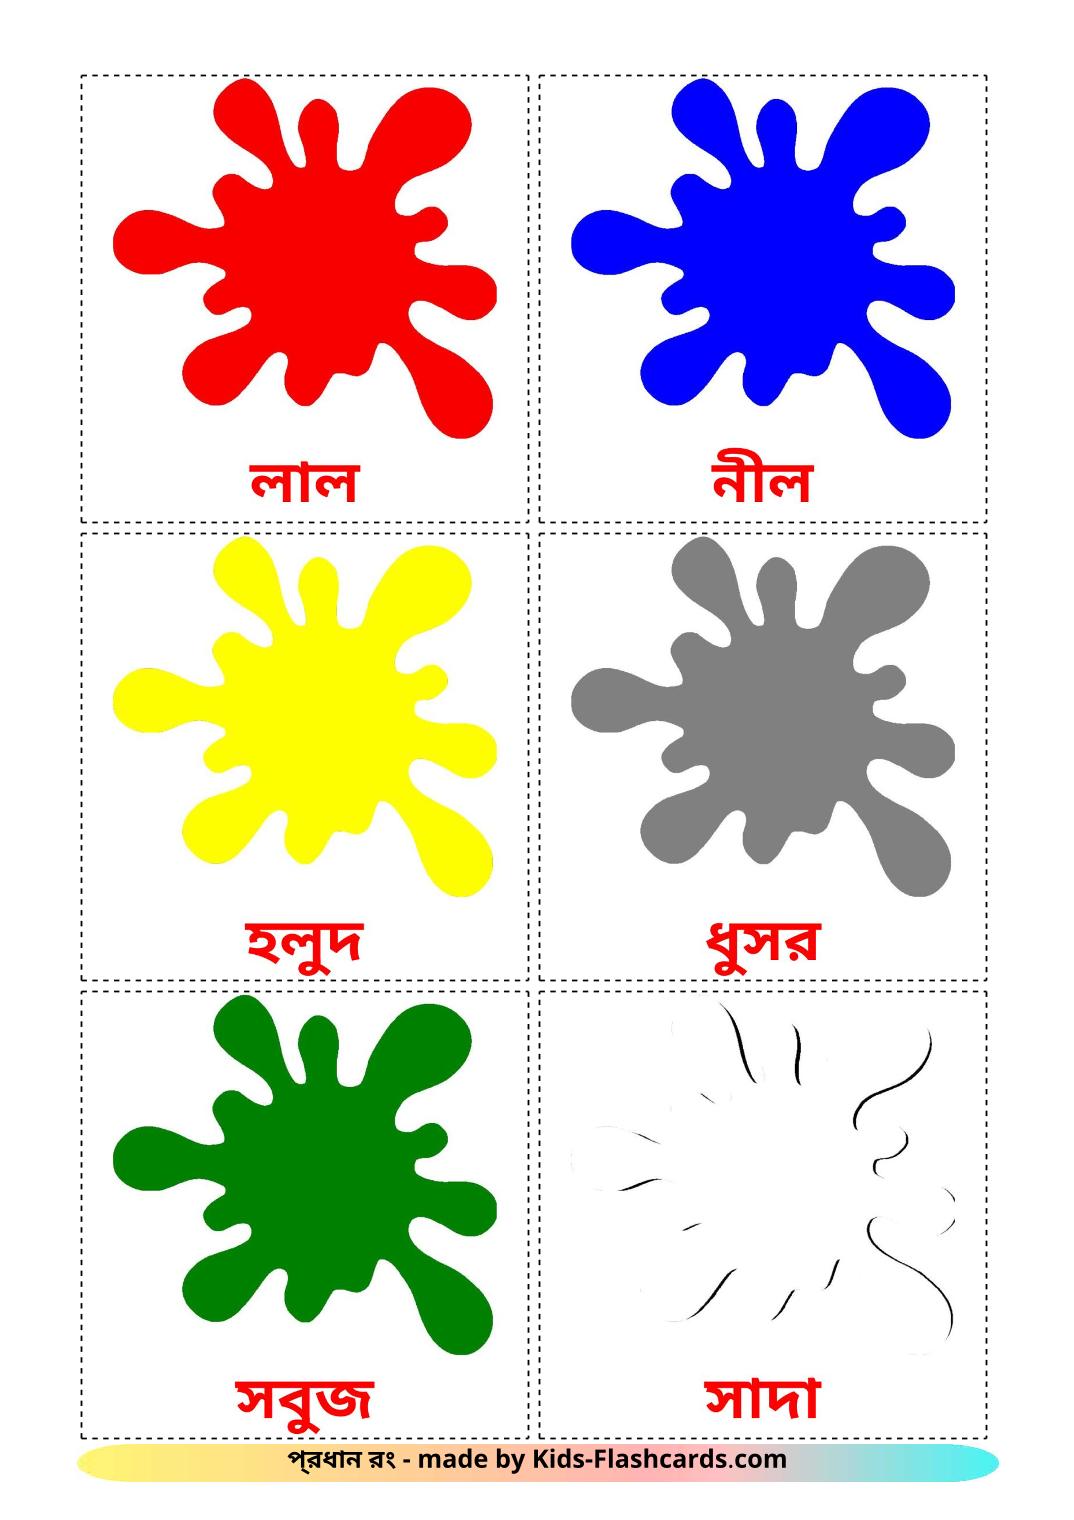 Farben - 12 kostenlose, druckbare Bengalisch Flashcards 